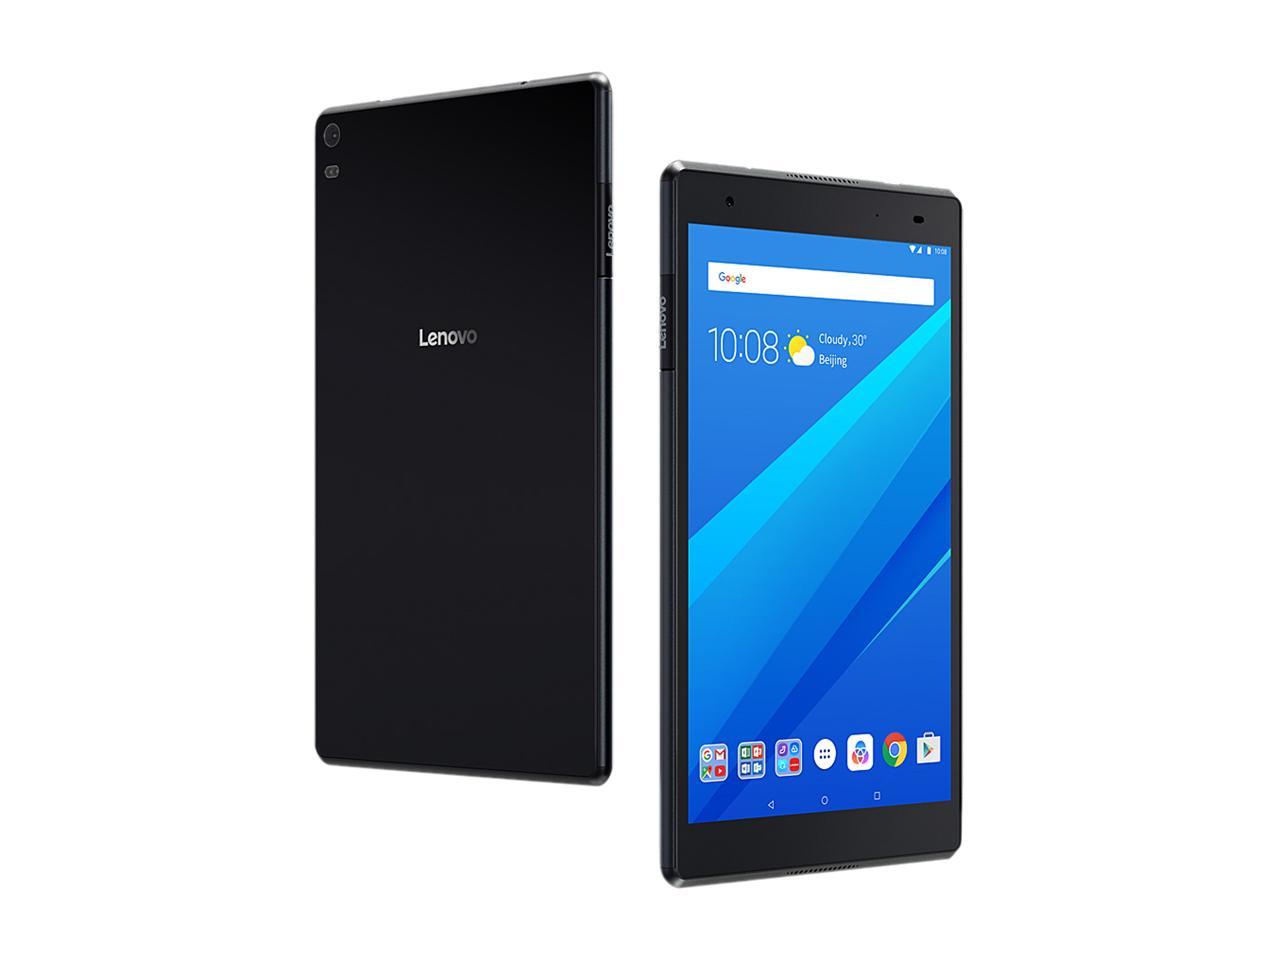 Lenovo Tab 4 8 ZA2B0009US Qualcomm Snapdragon 1.40 GHz 2 GB Memory 16 GB Flash Storage 8.0" 1280 x 800 Tablet PC Android 7.1 (Nougat) Slate Black